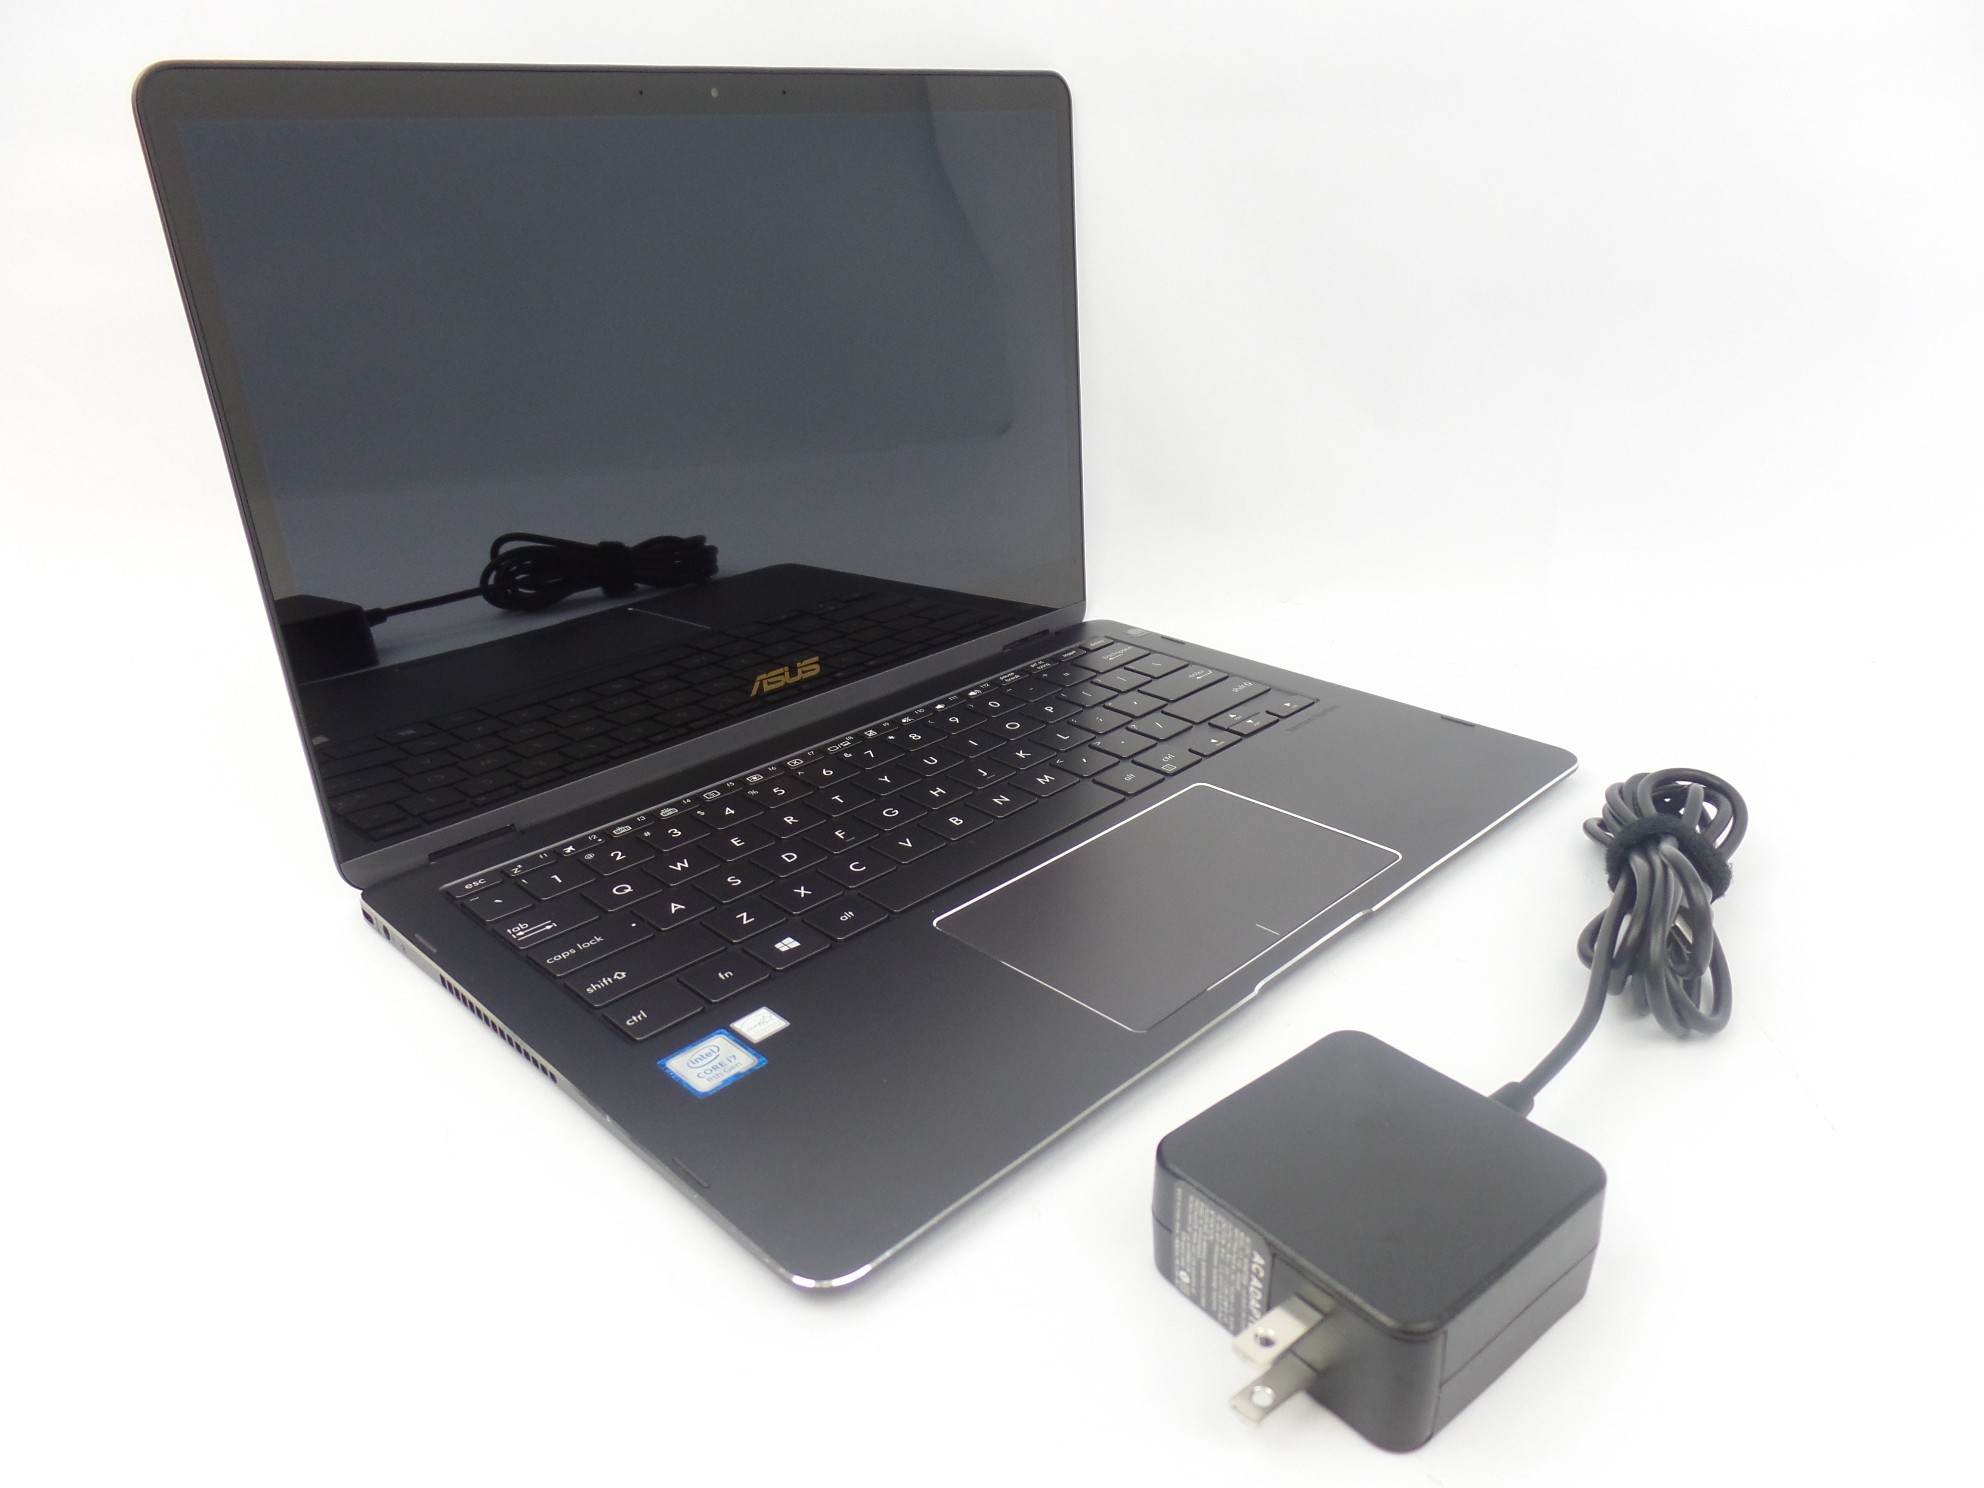 ASUS Q325UA-BI7T21 13.3" FHD Touch i7-8550U 1.8GHz 16GB 512GB W10H 2in1 Laptop S